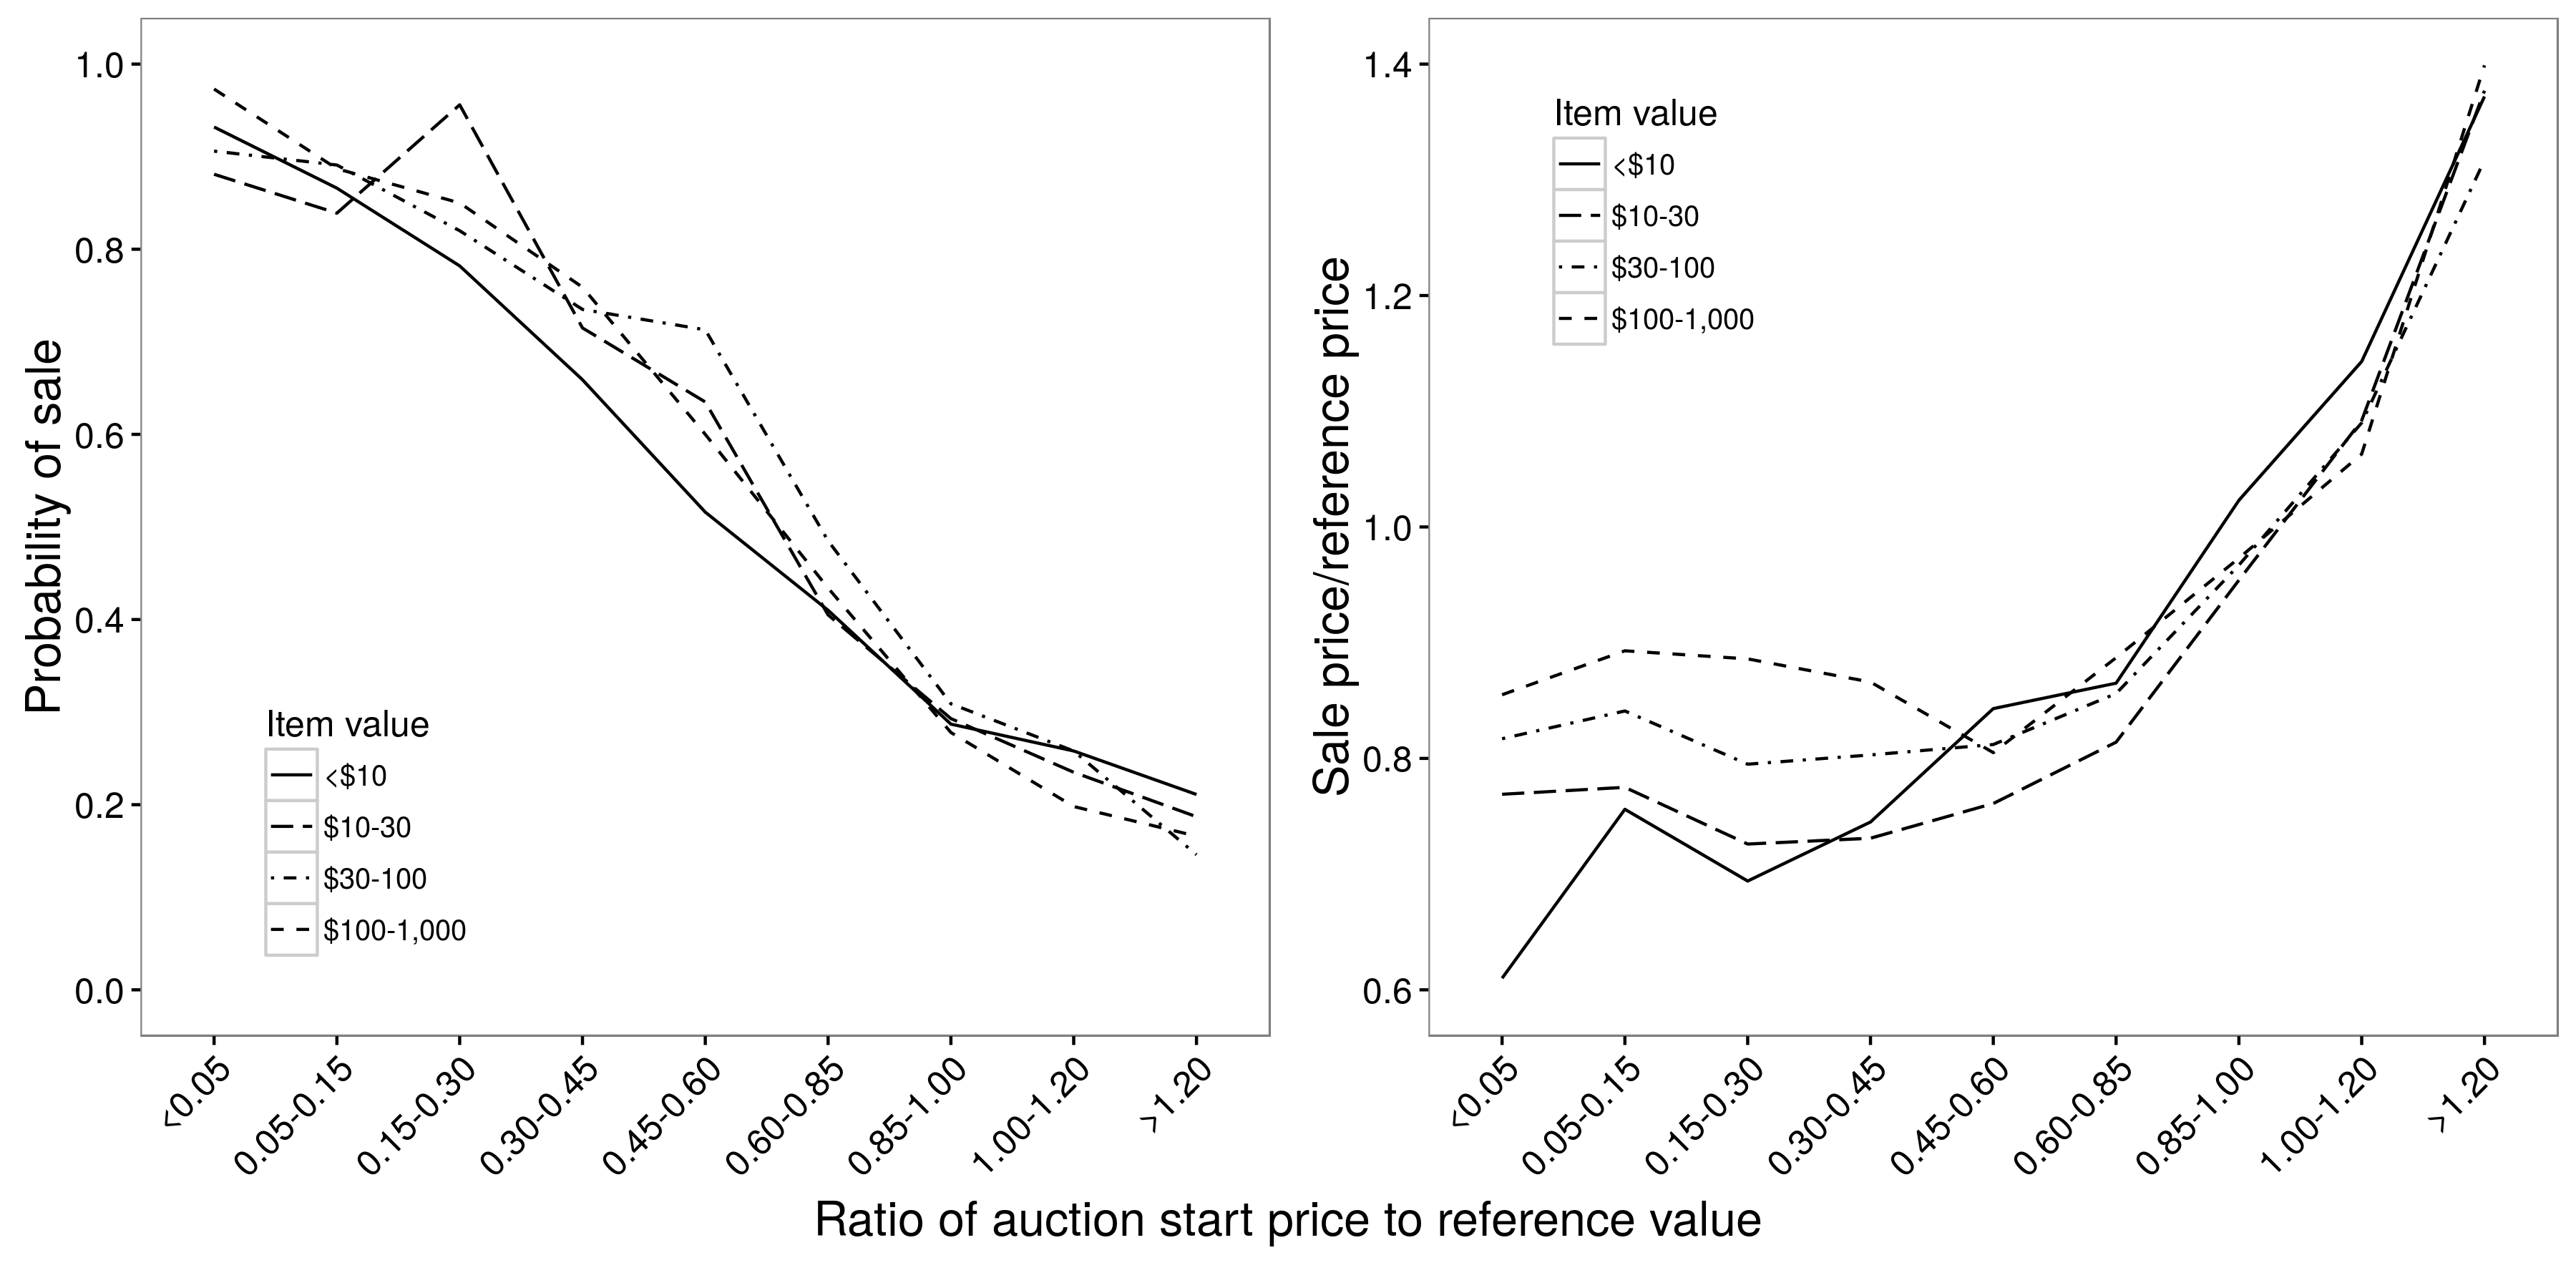 Рисунок 2.9: Співвідношення початкової ціни аукціону та вірогідності продажу (а) та ціни продажу (б). Існує приблизно лінійна залежність між початковою ціною та ймовірністю продажу, але нелінійна взаємозв'язок між початковою ціною та ціною продажу; для початкових цін від 0,05 до 0,85, стартова ціна дуже мало впливає на ціну продажу. В обох випадках взаємозв'язки в основному не залежать від вартості елемента. Адаптований від Einav та співавт. (2015 р.), Рисунки 4а та 4б.